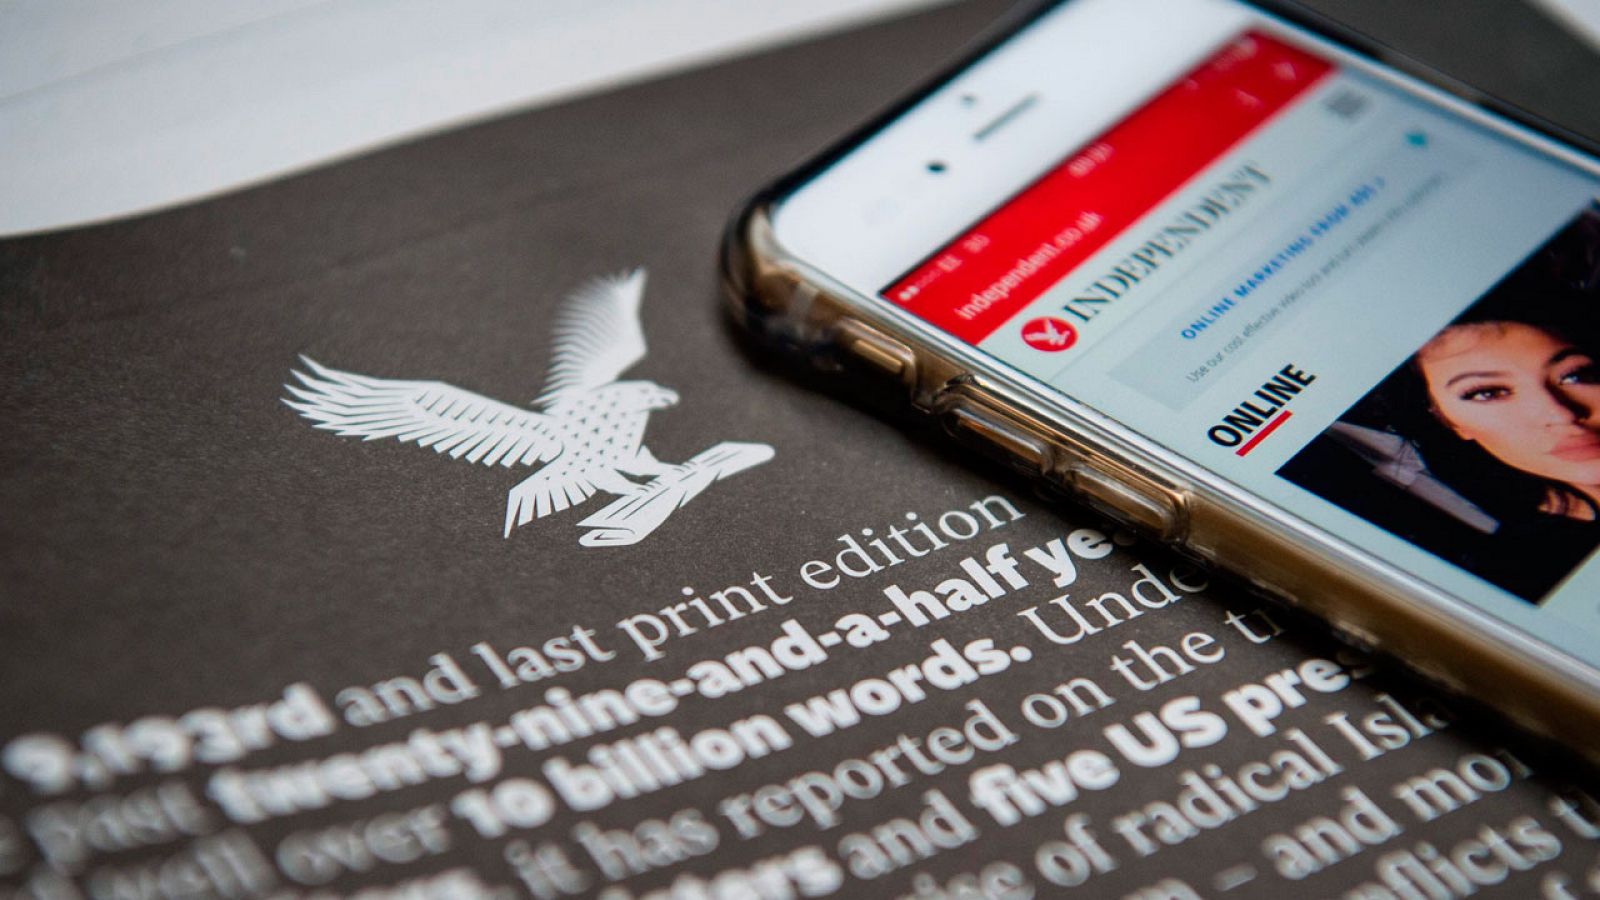 Un smartphone muestra la versión on line 'The Independent' sobre el último número en papel